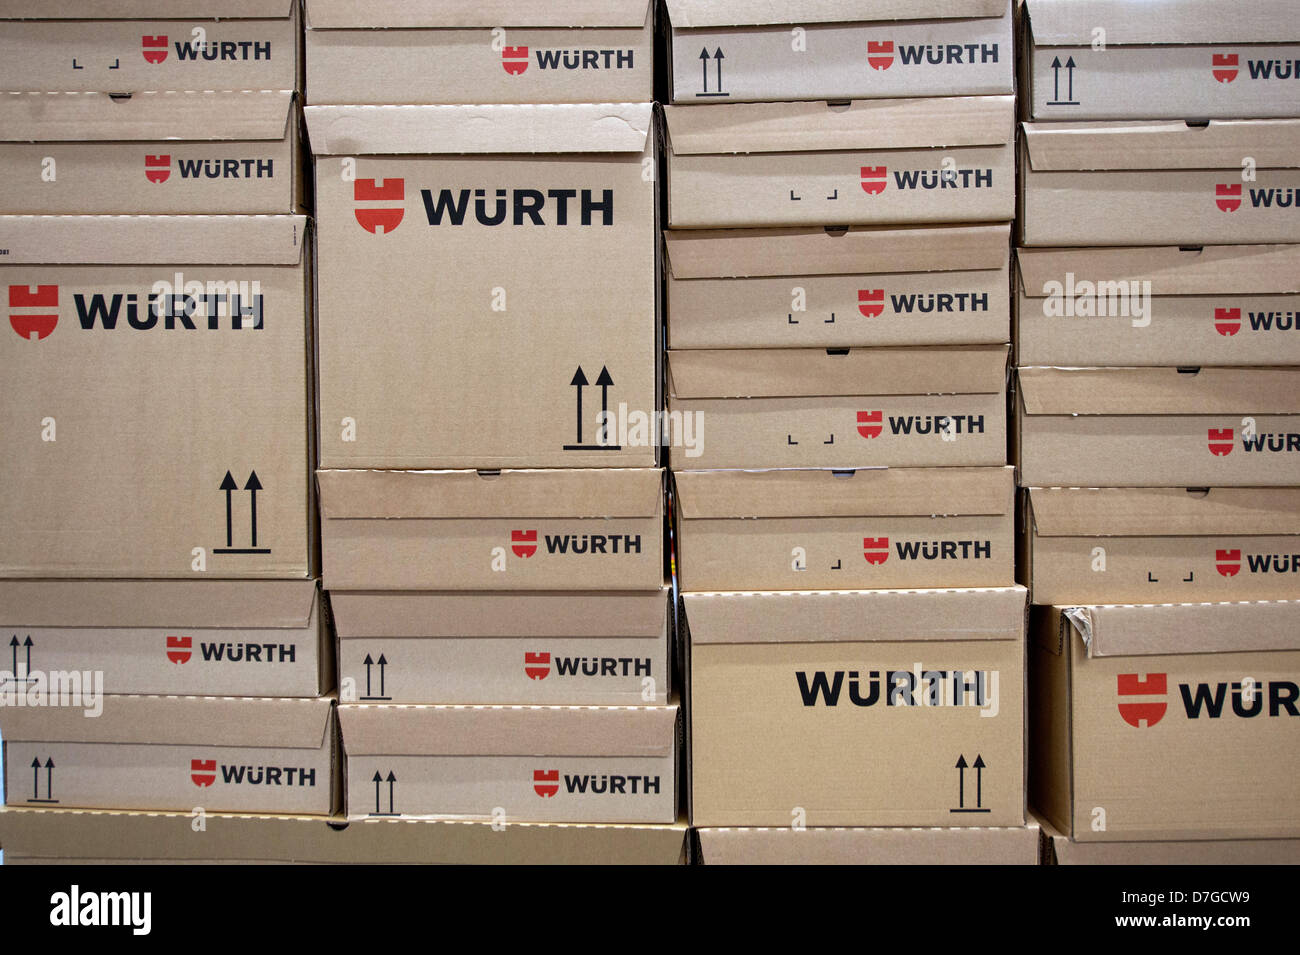 Kartons für den Versand werden in das Logistik-Center West bei der Wuerth-Gruppe in Künzelsau, Deutschland, 7. Mai 2013 gestapelt. Wuerth erwartet einen leichten Anstieg im Umsatz in diesem Jahr trotz der anhaltenden Wirtschaftskrise. Foto: MARIJAN MURAT Stockfoto